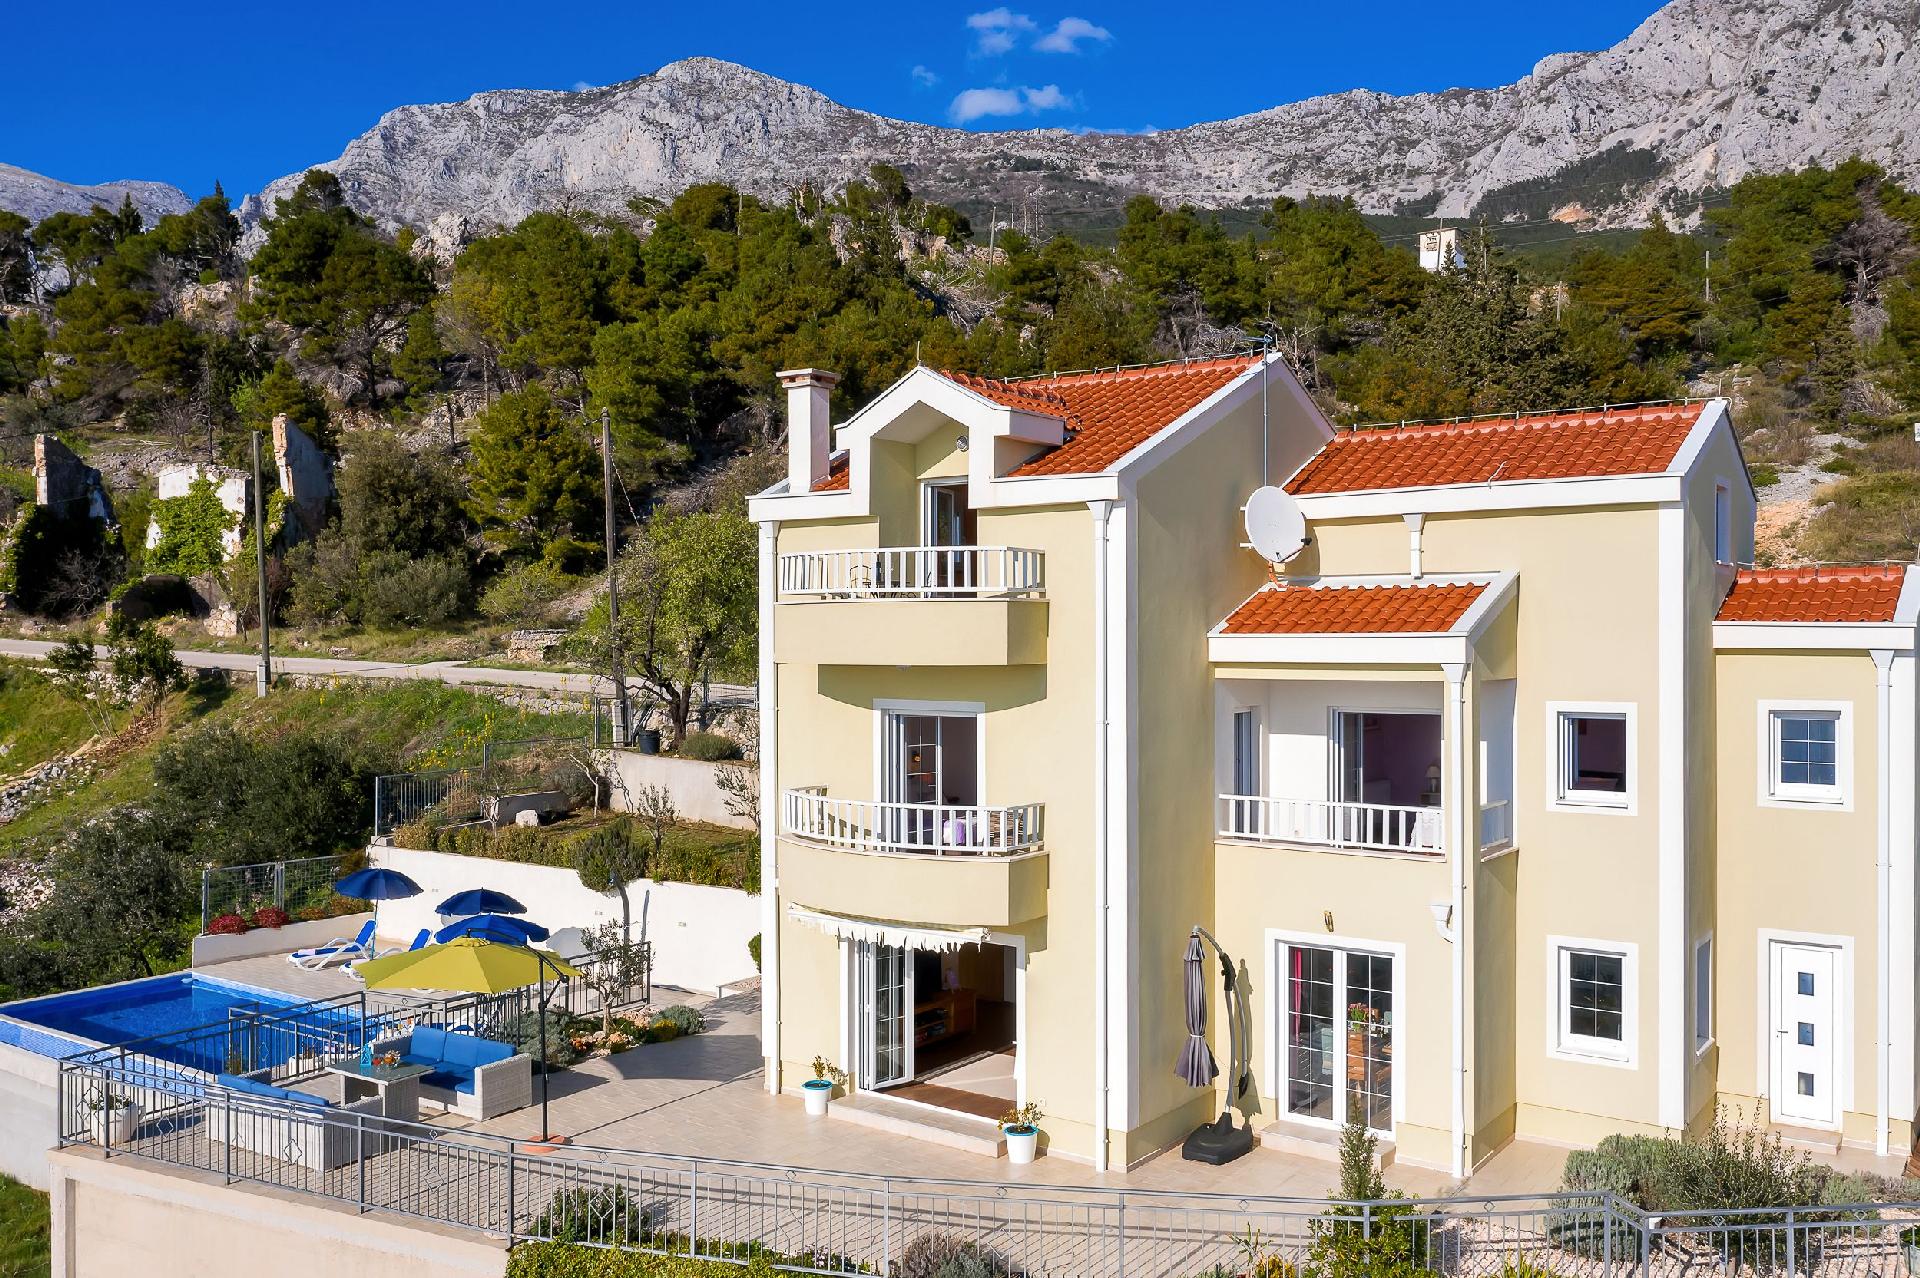 Luxuriöse Villa mit großer Terrasse und Ferienhaus in Kroatien